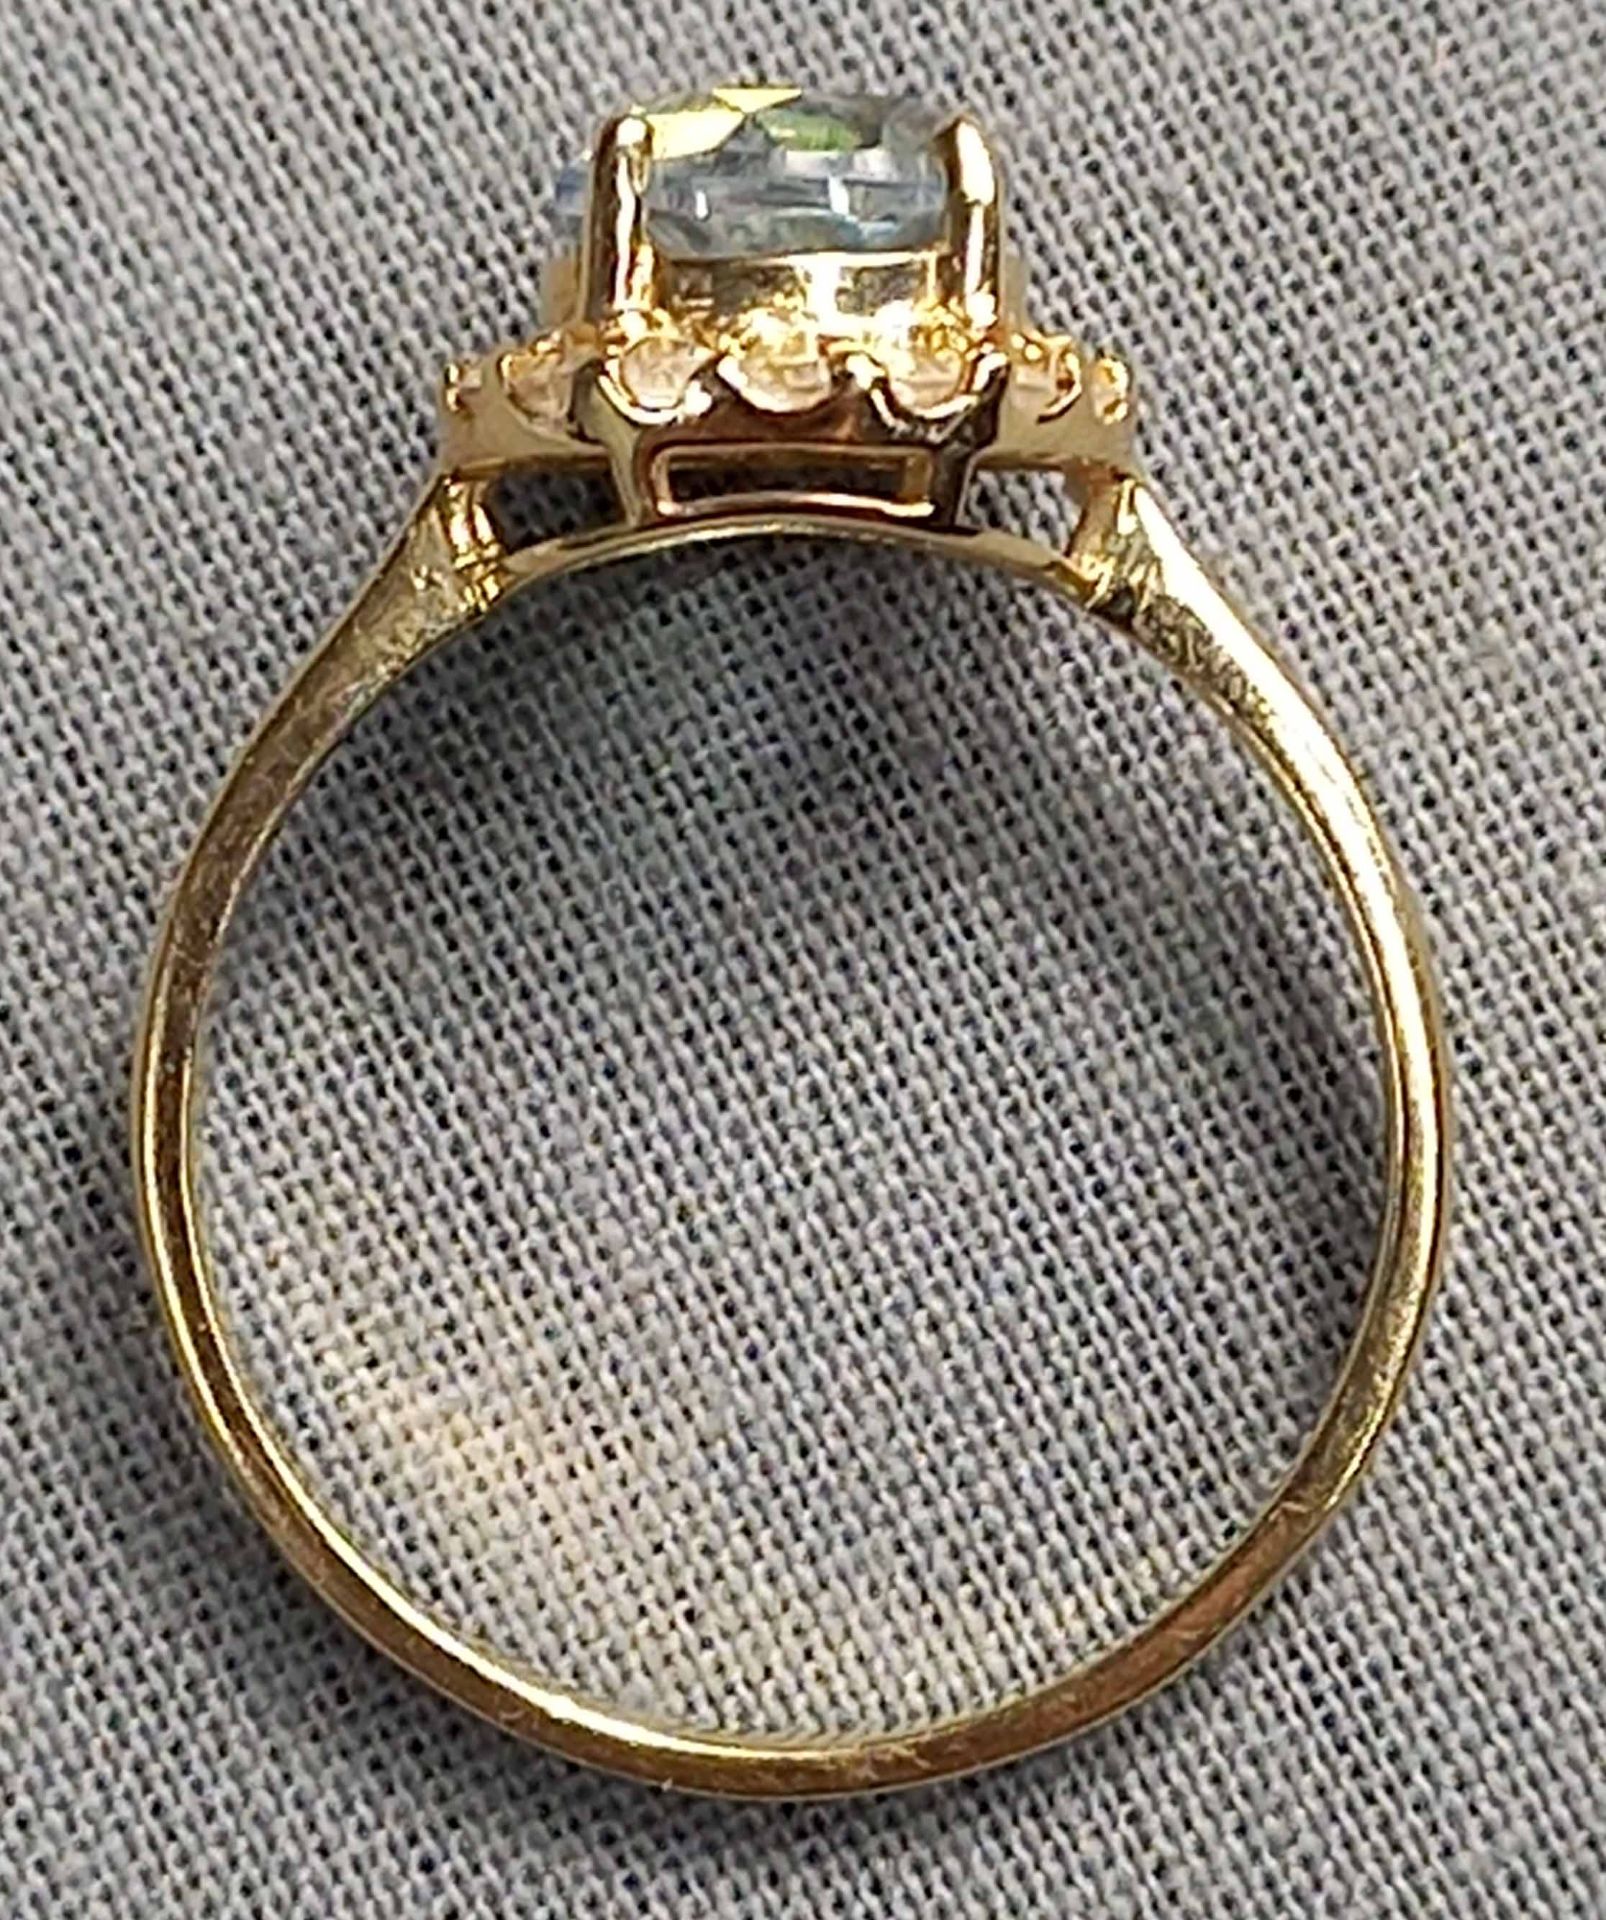 4 Ringe Gold 585 mit Steinen (Aquamarin, Rubin, Diamant, Saphir). - Bild 6 aus 29